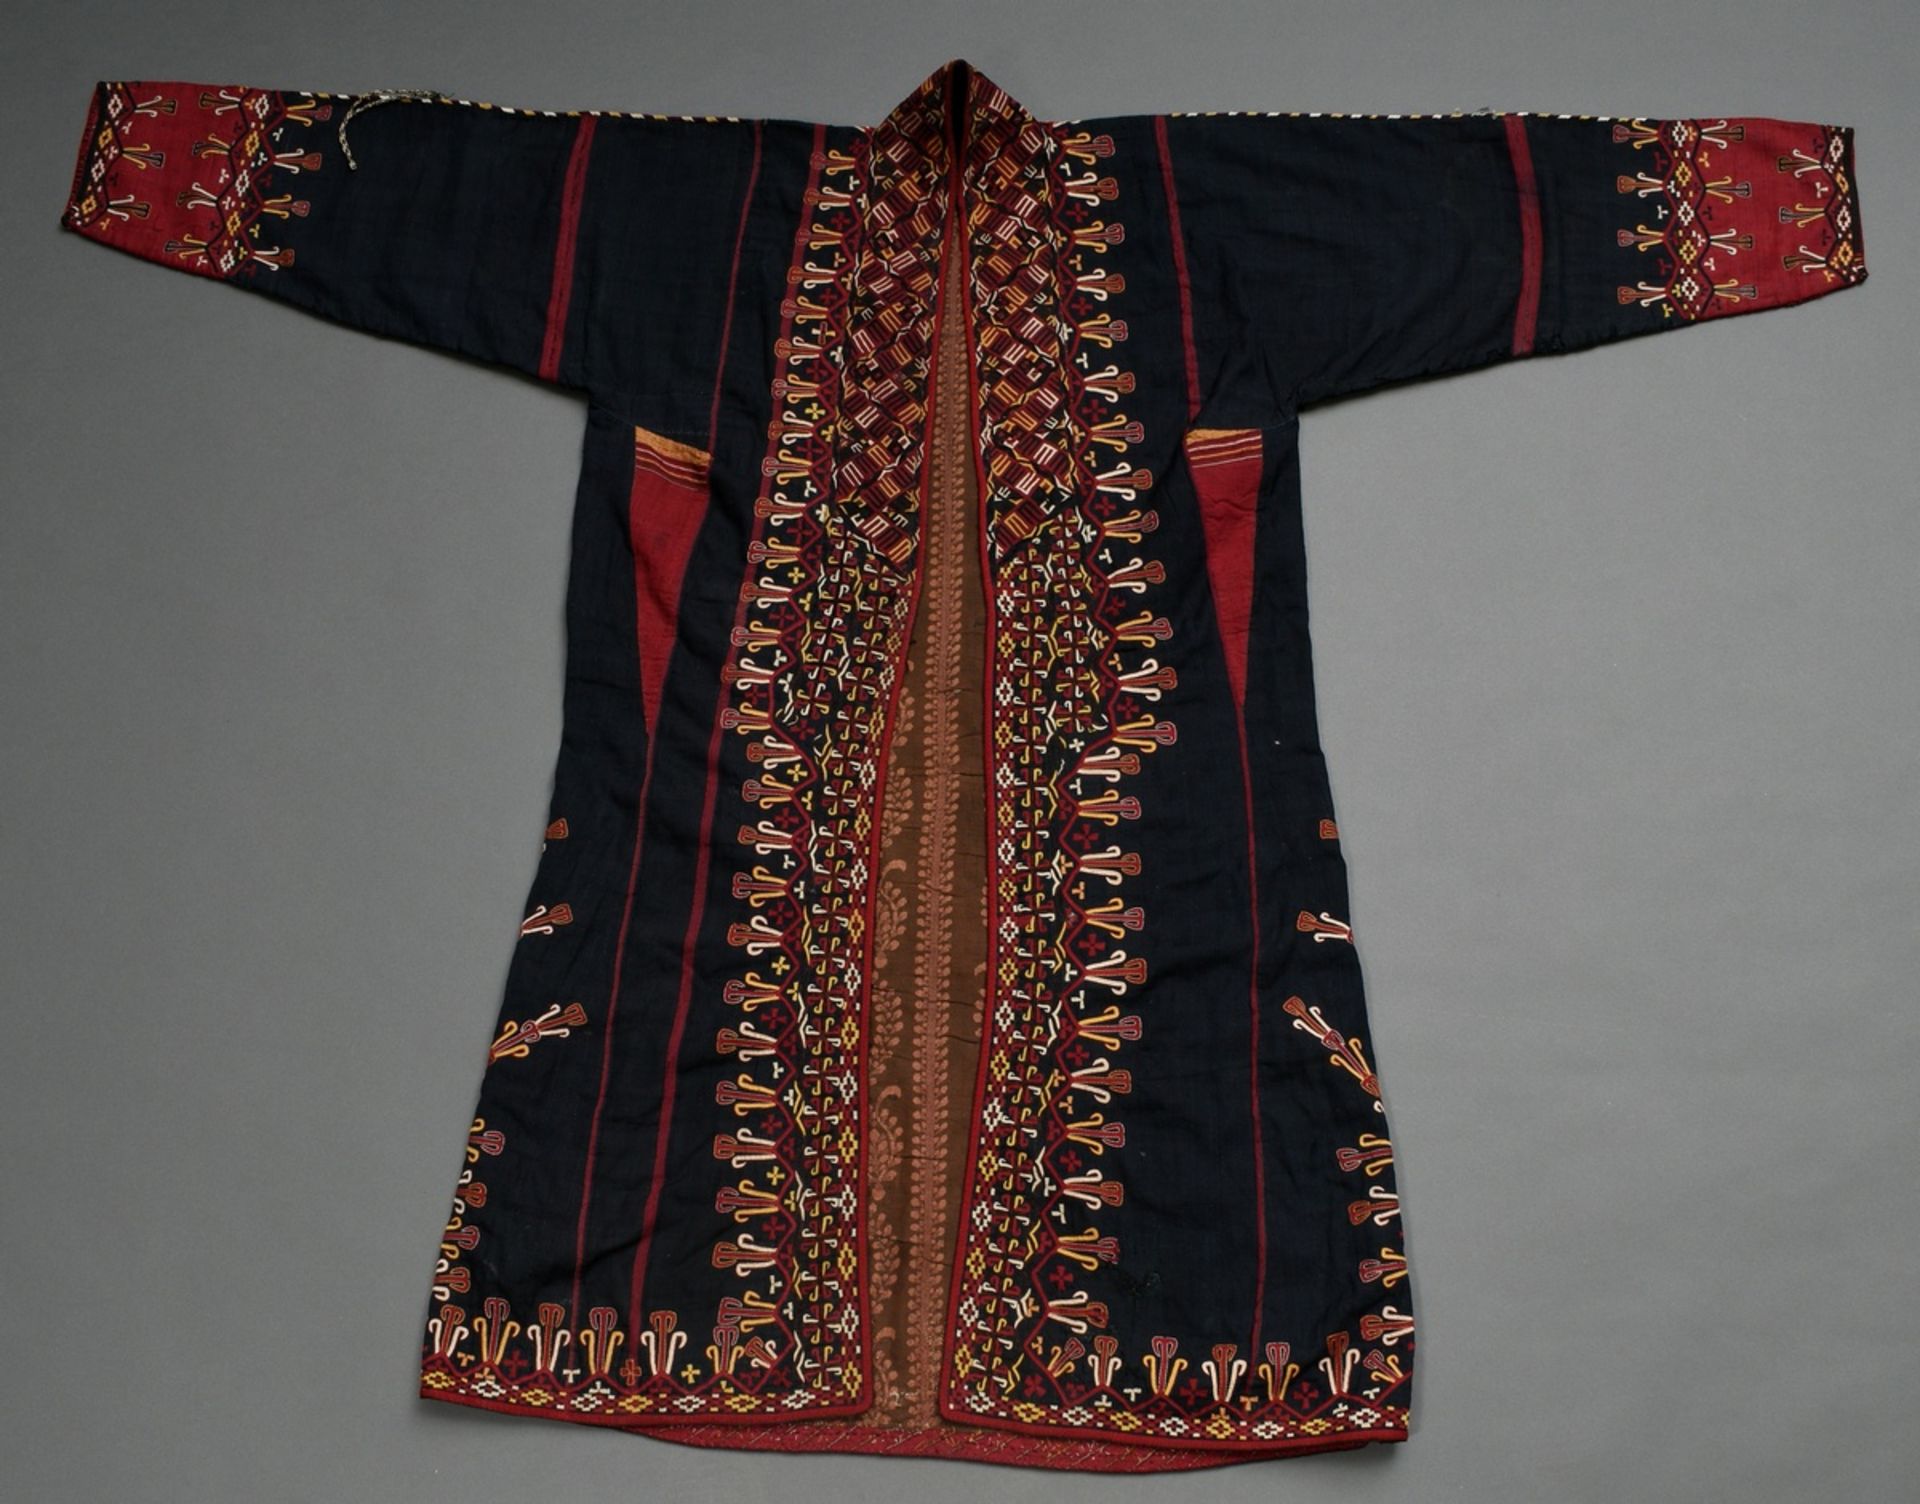 Turkmenischer Tschirpi Frauenmantel mit farbigen Stickereibordüren auf schwarzer Baumwolle, Futter 